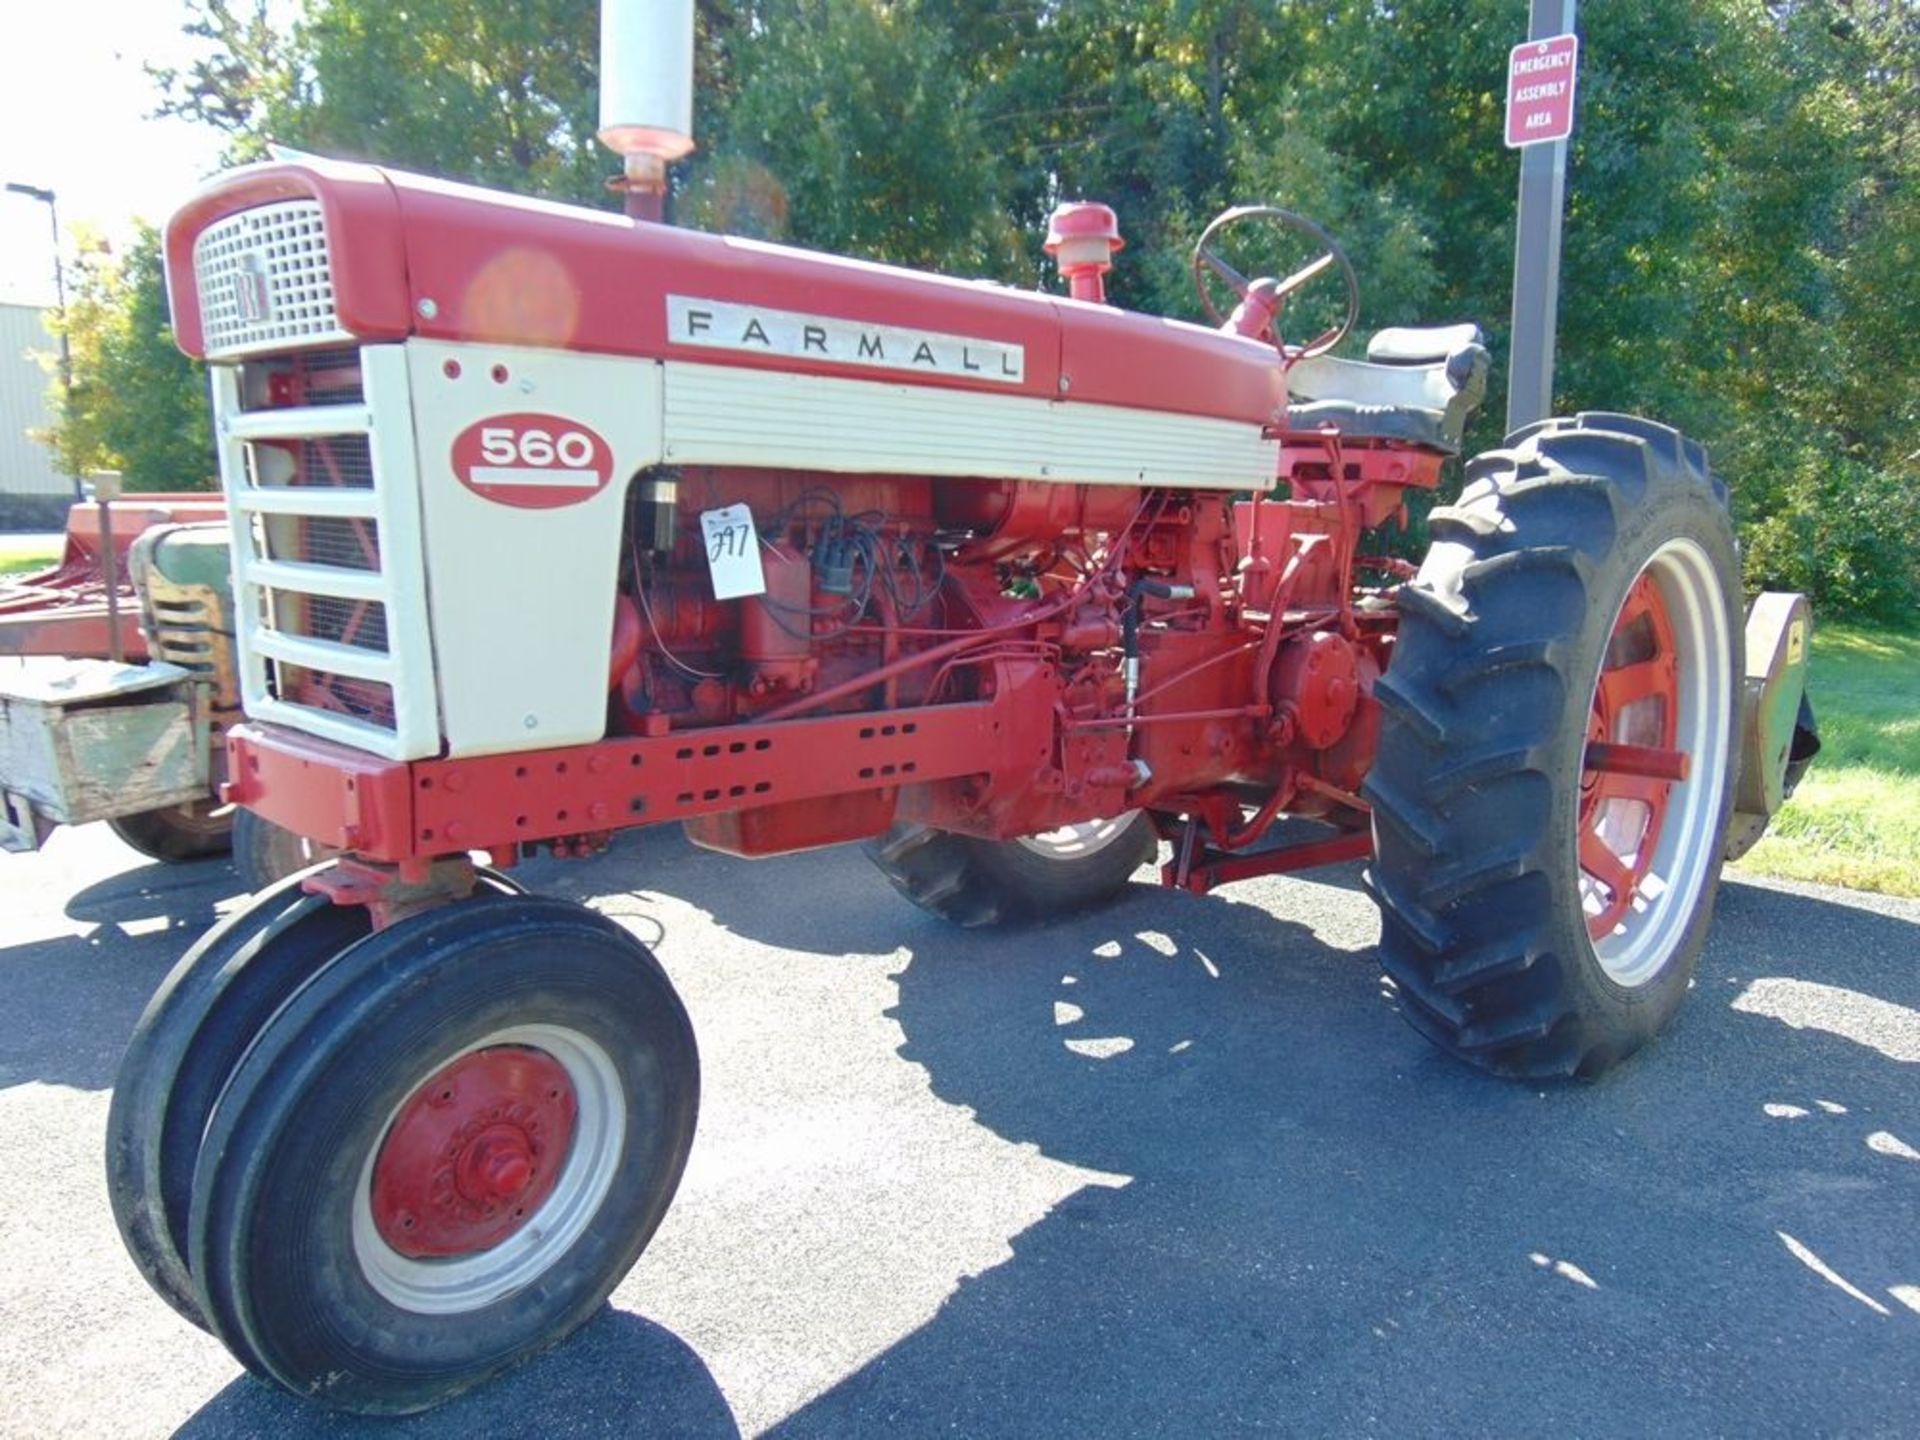 Farm All mod. 5600 Tractor w/ Mower, Gas-Powered